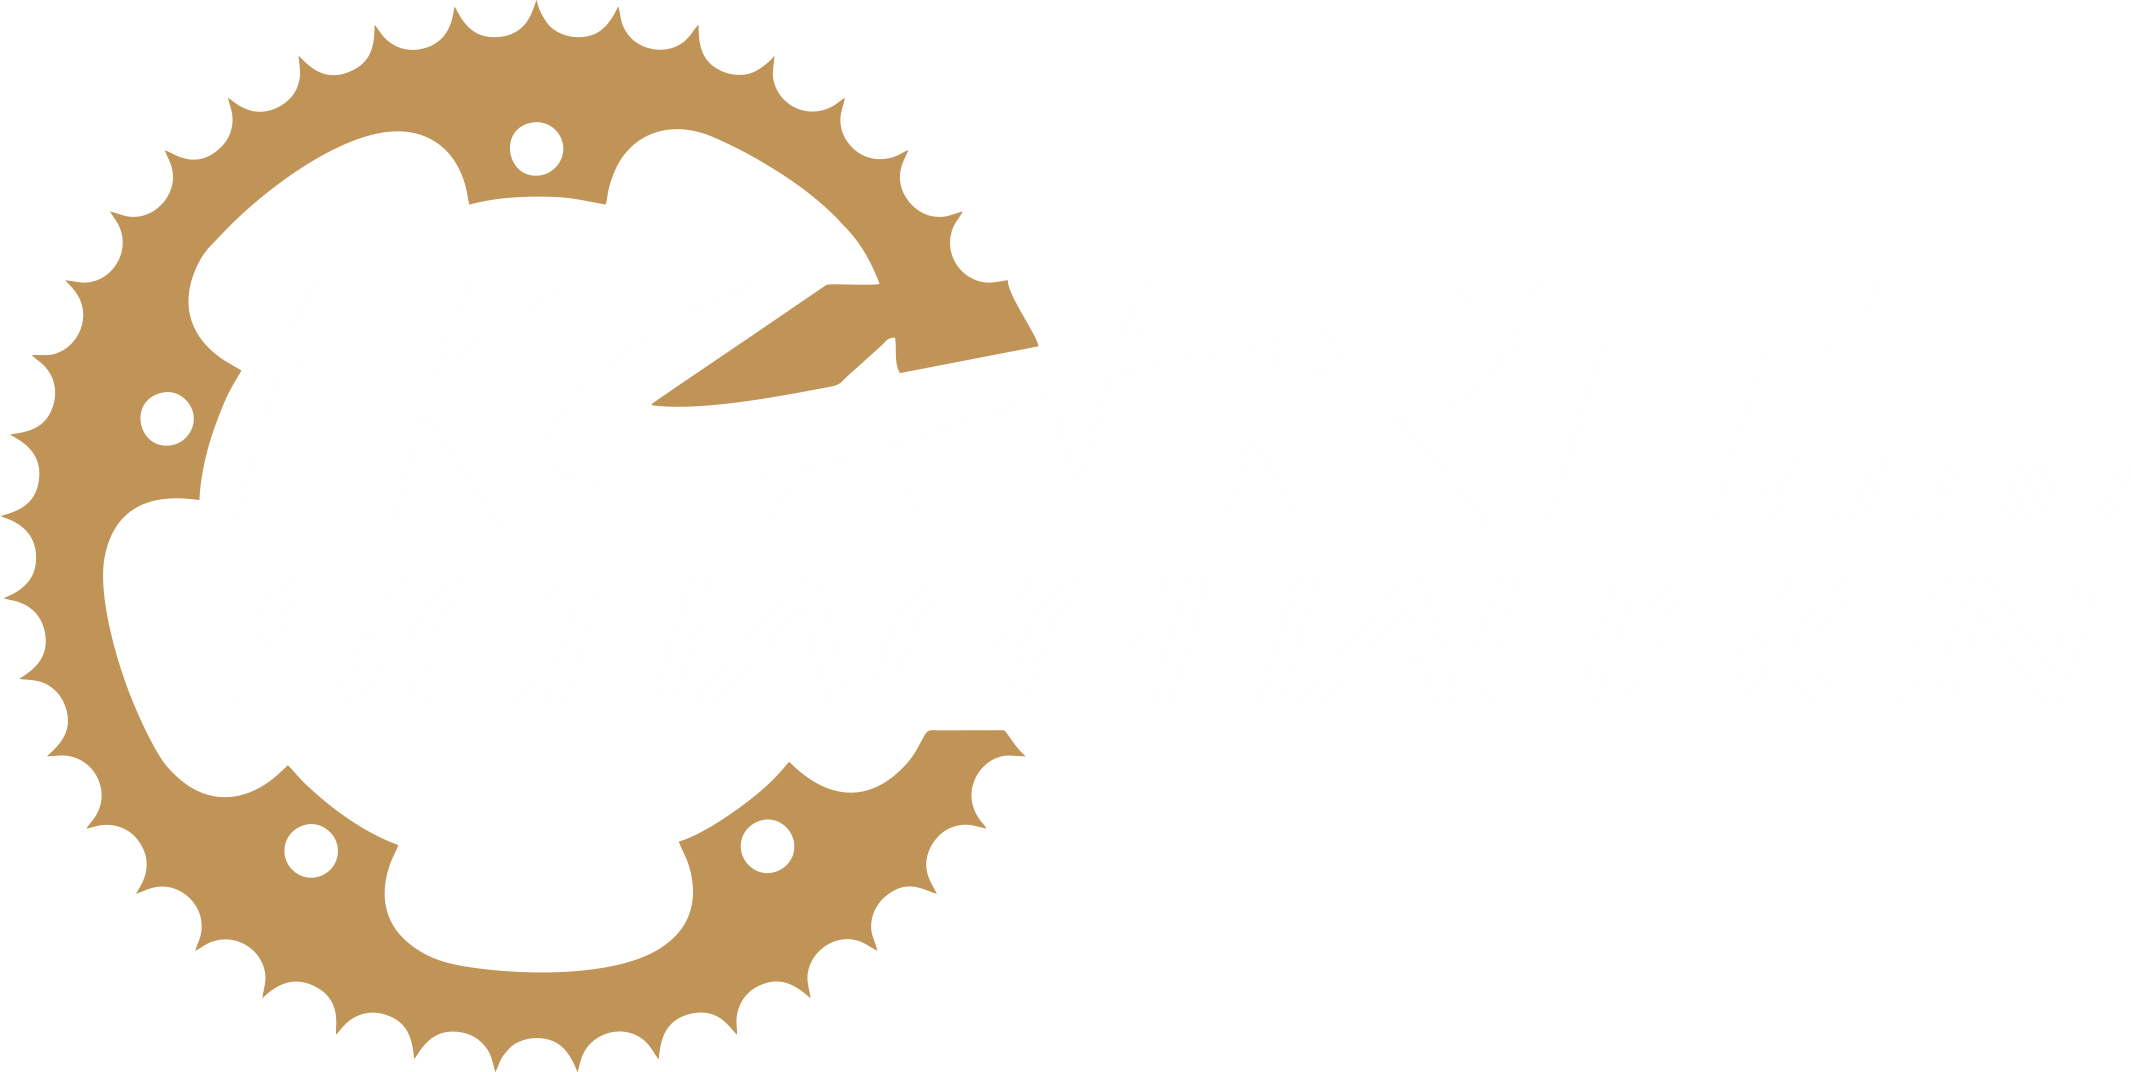 Kartclub Schaffhausen